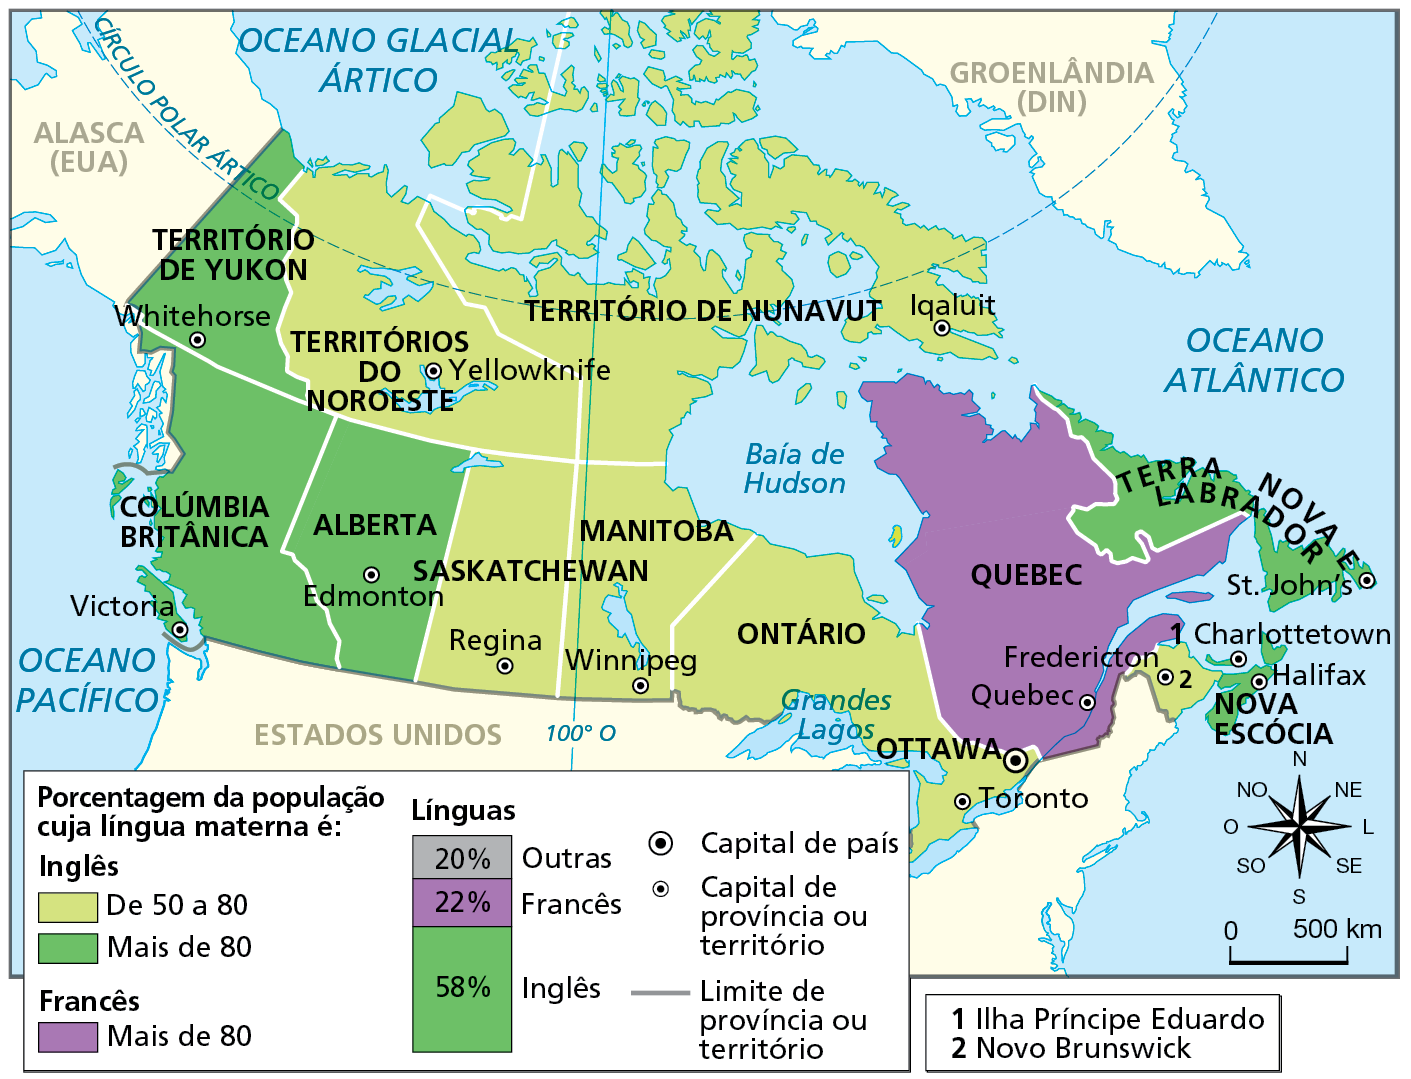 Mapa. Canadá: línguas, províncias e territórios.  Mapa do Canadá com sua divisão em províncias e territórios e a indicação da porcentagem de pessoas que têm como língua materna o inglês ou o francês em cada território ou província.  De 50 a 80 por cento da população cuja língua materna é o inglês: Territórios no Noroeste, cuja capital é Yellowknife, Território de Nunavut, cuja capital é Iqaluit, Província de Saskatchewan, cuja capital é Regina, Província de Manitoba, cuja capital é Winnipeg, Província de Ontário, cuja capital é Toronto, e Província Novo Brunswick, cuja capital é Fredericton.  Mais de 80 por cento da população cuja língua materna é o inglês: Território de Yukon, cuja capital é Whitehorse, Província Colúmbia Britânica, cuja capital é Victoria, Província Alberta, cuja capital é Edmonton, Província Terra Nova Labrador, cuja capital é St. John´s, Província Nova Escócia, cuja capital é Halifax, e Ilha Príncipe Eduardo, cuja capital é Charlottetown. Mais de 80 por cento da população cuja língua materna é o francês: Província de Quebec, cuja capital é Quebec.  No total da população do Canadá: 58 por cento falam inglês, 22 por cento francês e 20 por cento outras línguas. Capital do país: Ottawa. Abaixo, rosa dos ventos e escala de 0 a 500 quilômetros.